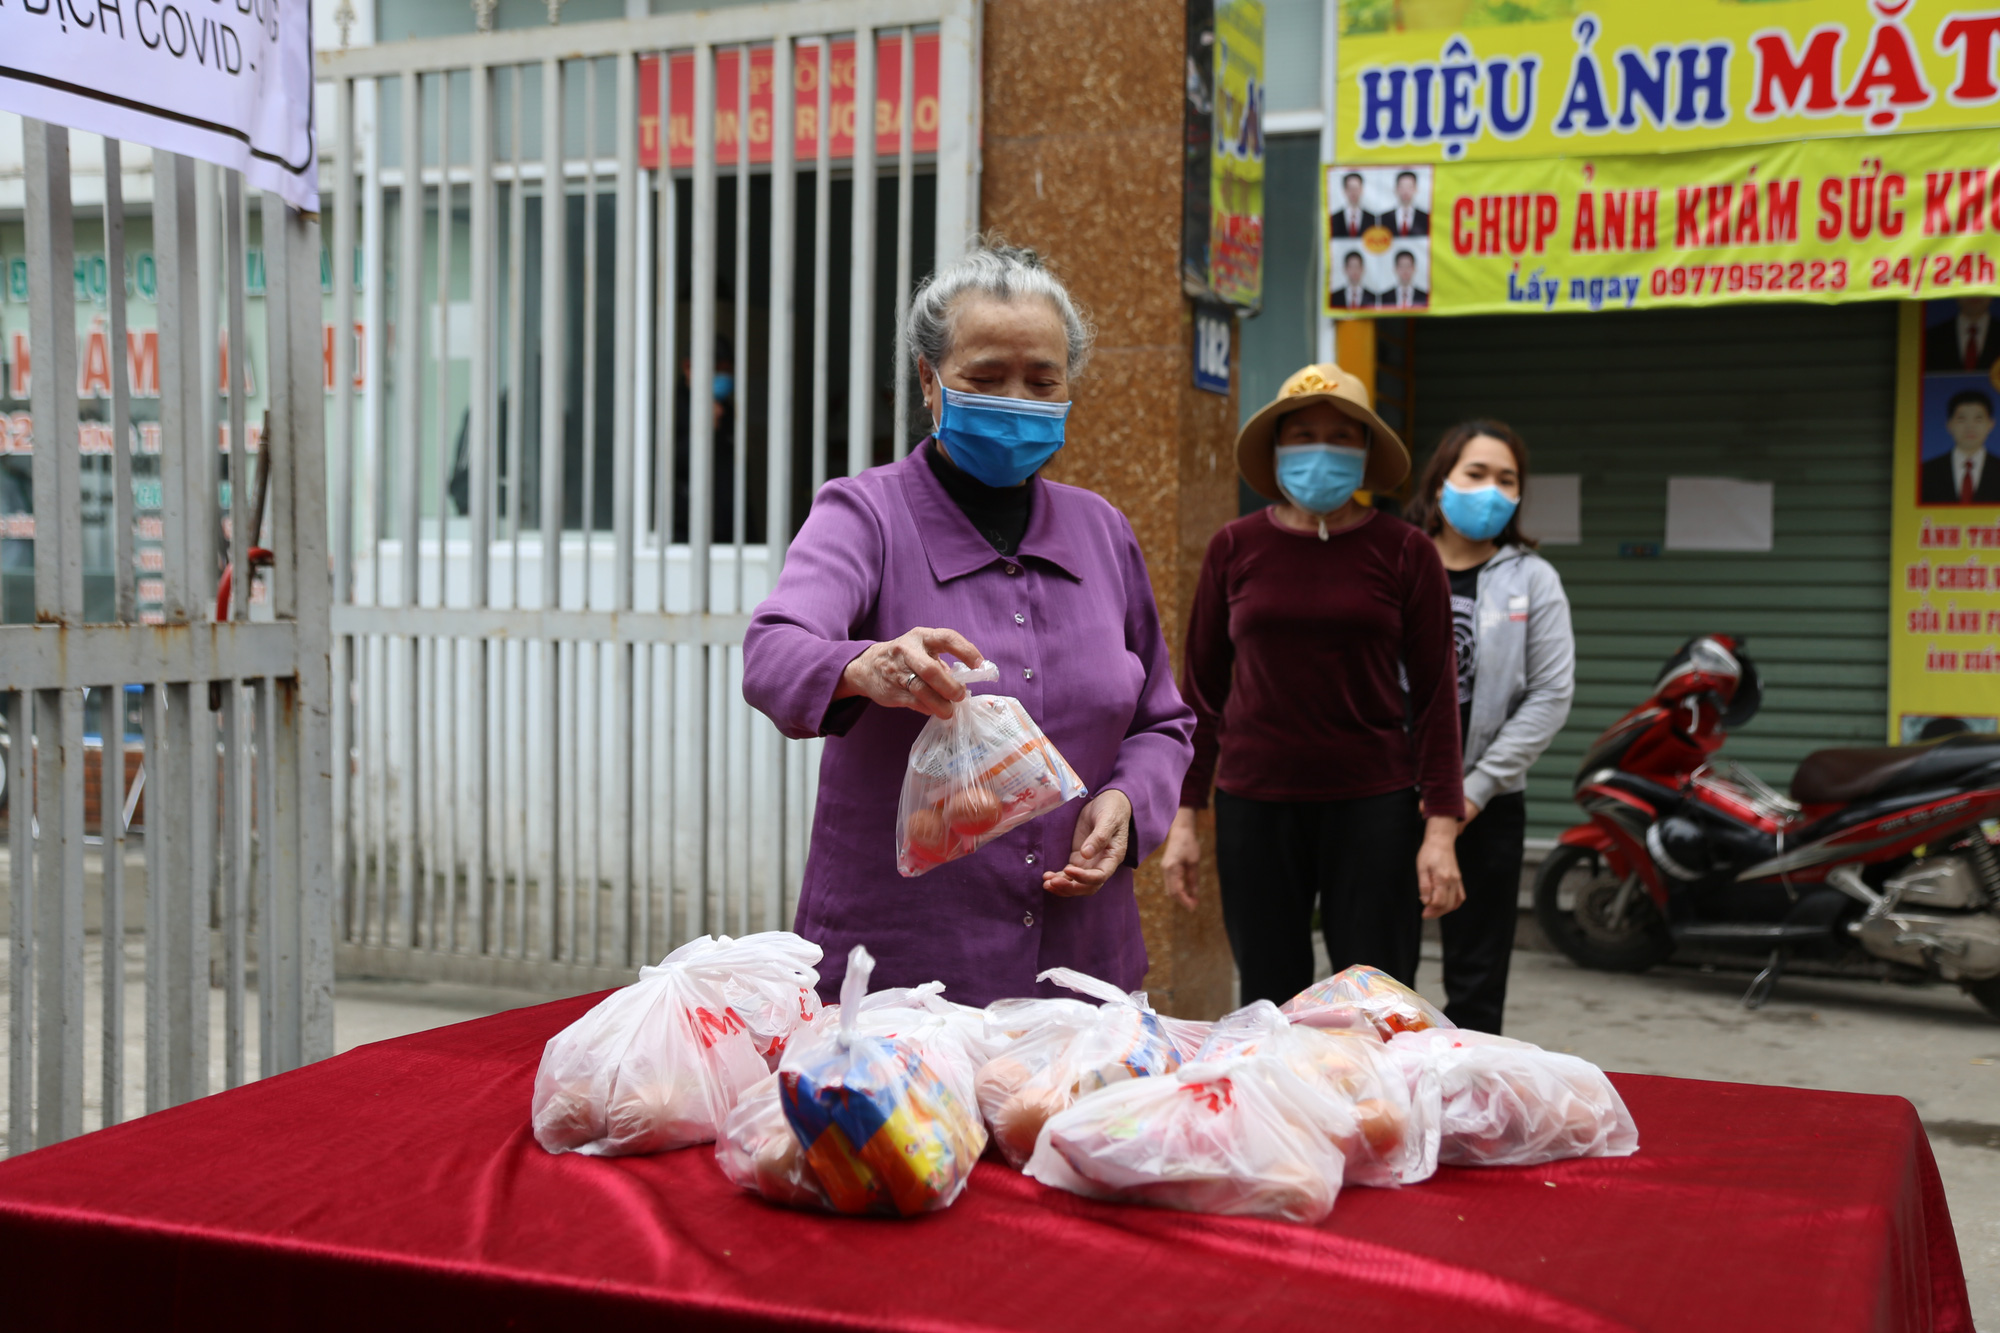 Chùm ảnh: Ai cần cứ đến lấy và hàng trăm suất ăn miễn phí dành tặng người lao động nghèo giữa mùa dịch covid -19 ở Hà Nội - Ảnh 7.